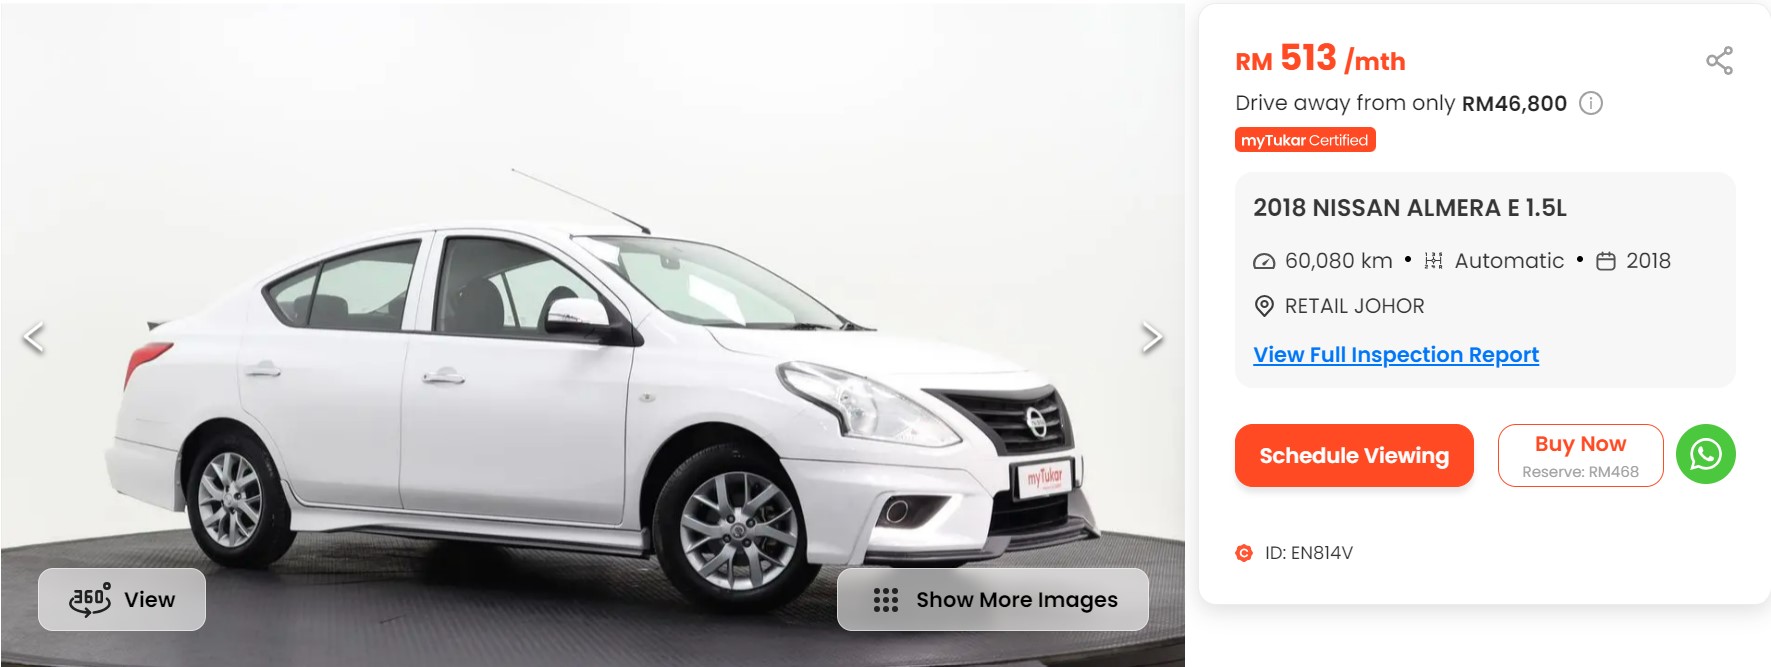 Affordable car, Nissan Almera